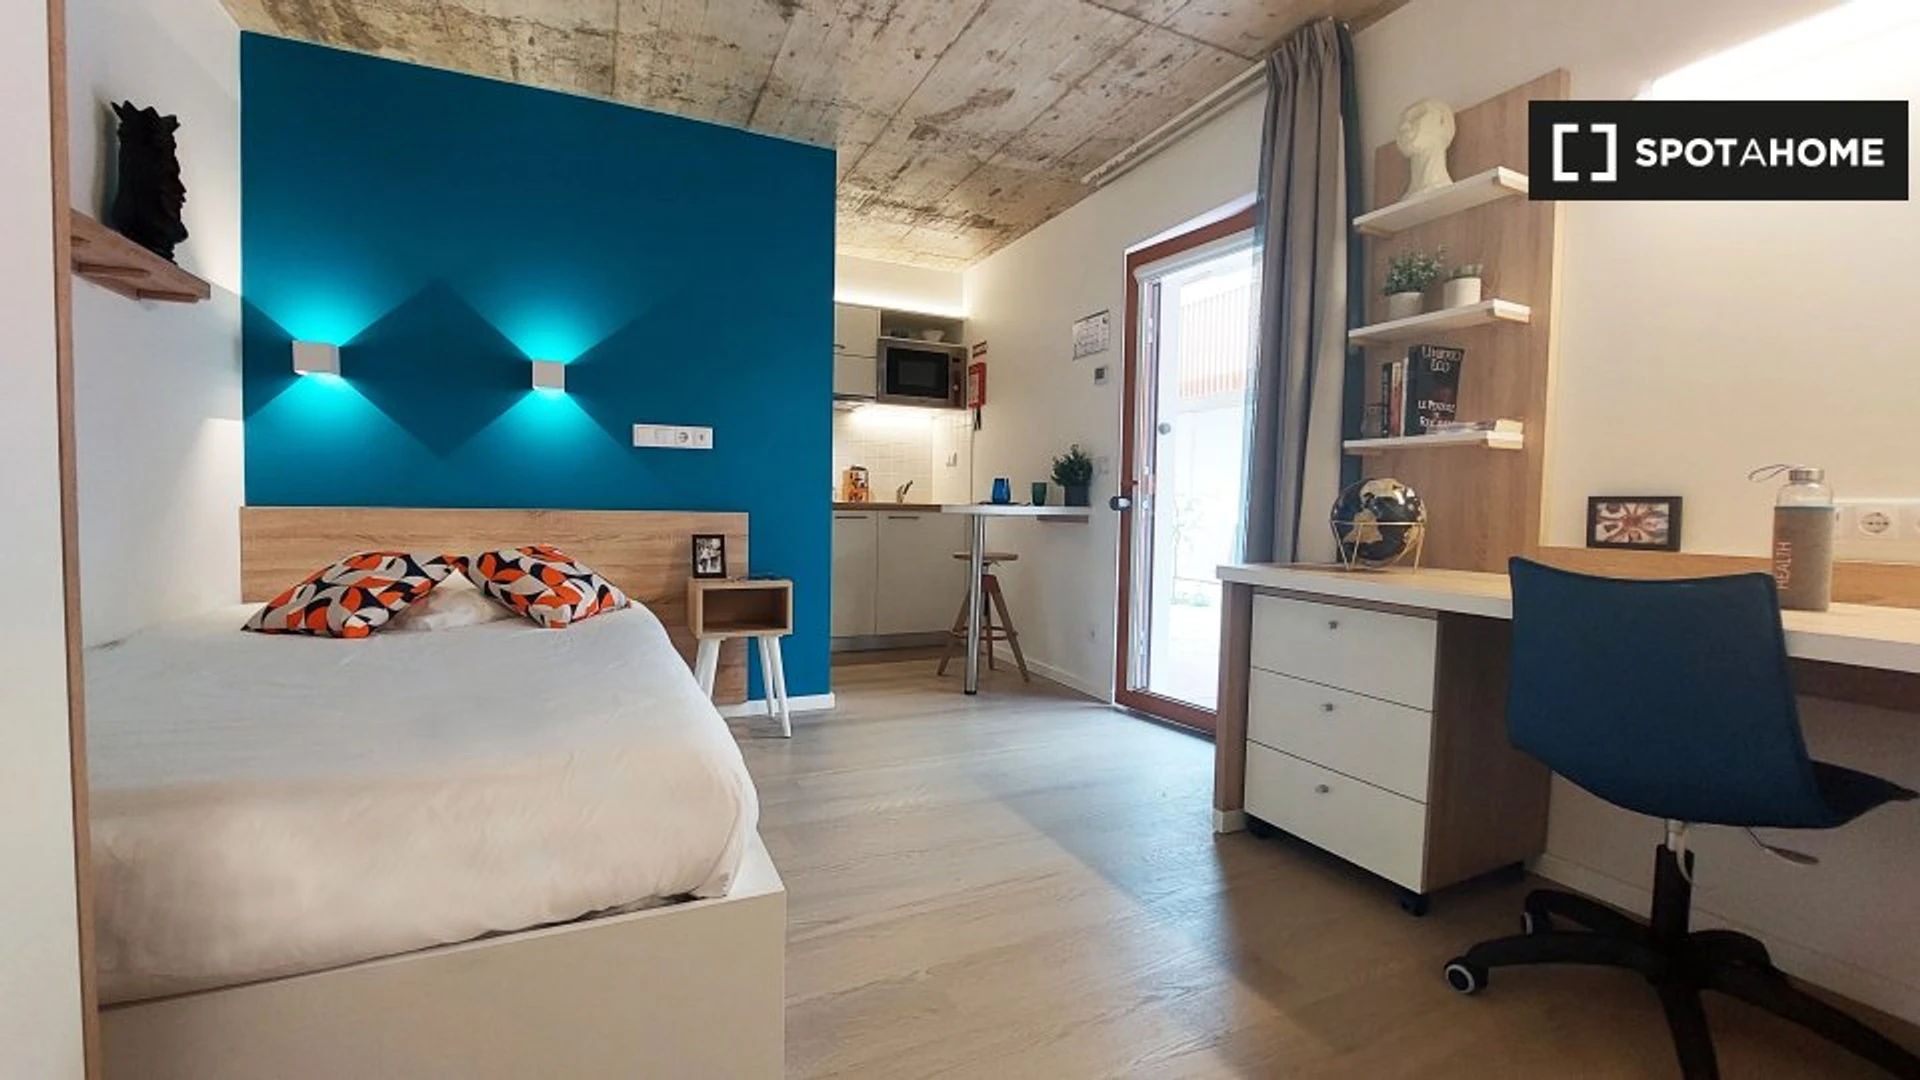 Alquiler de habitaciones por meses en Oporto